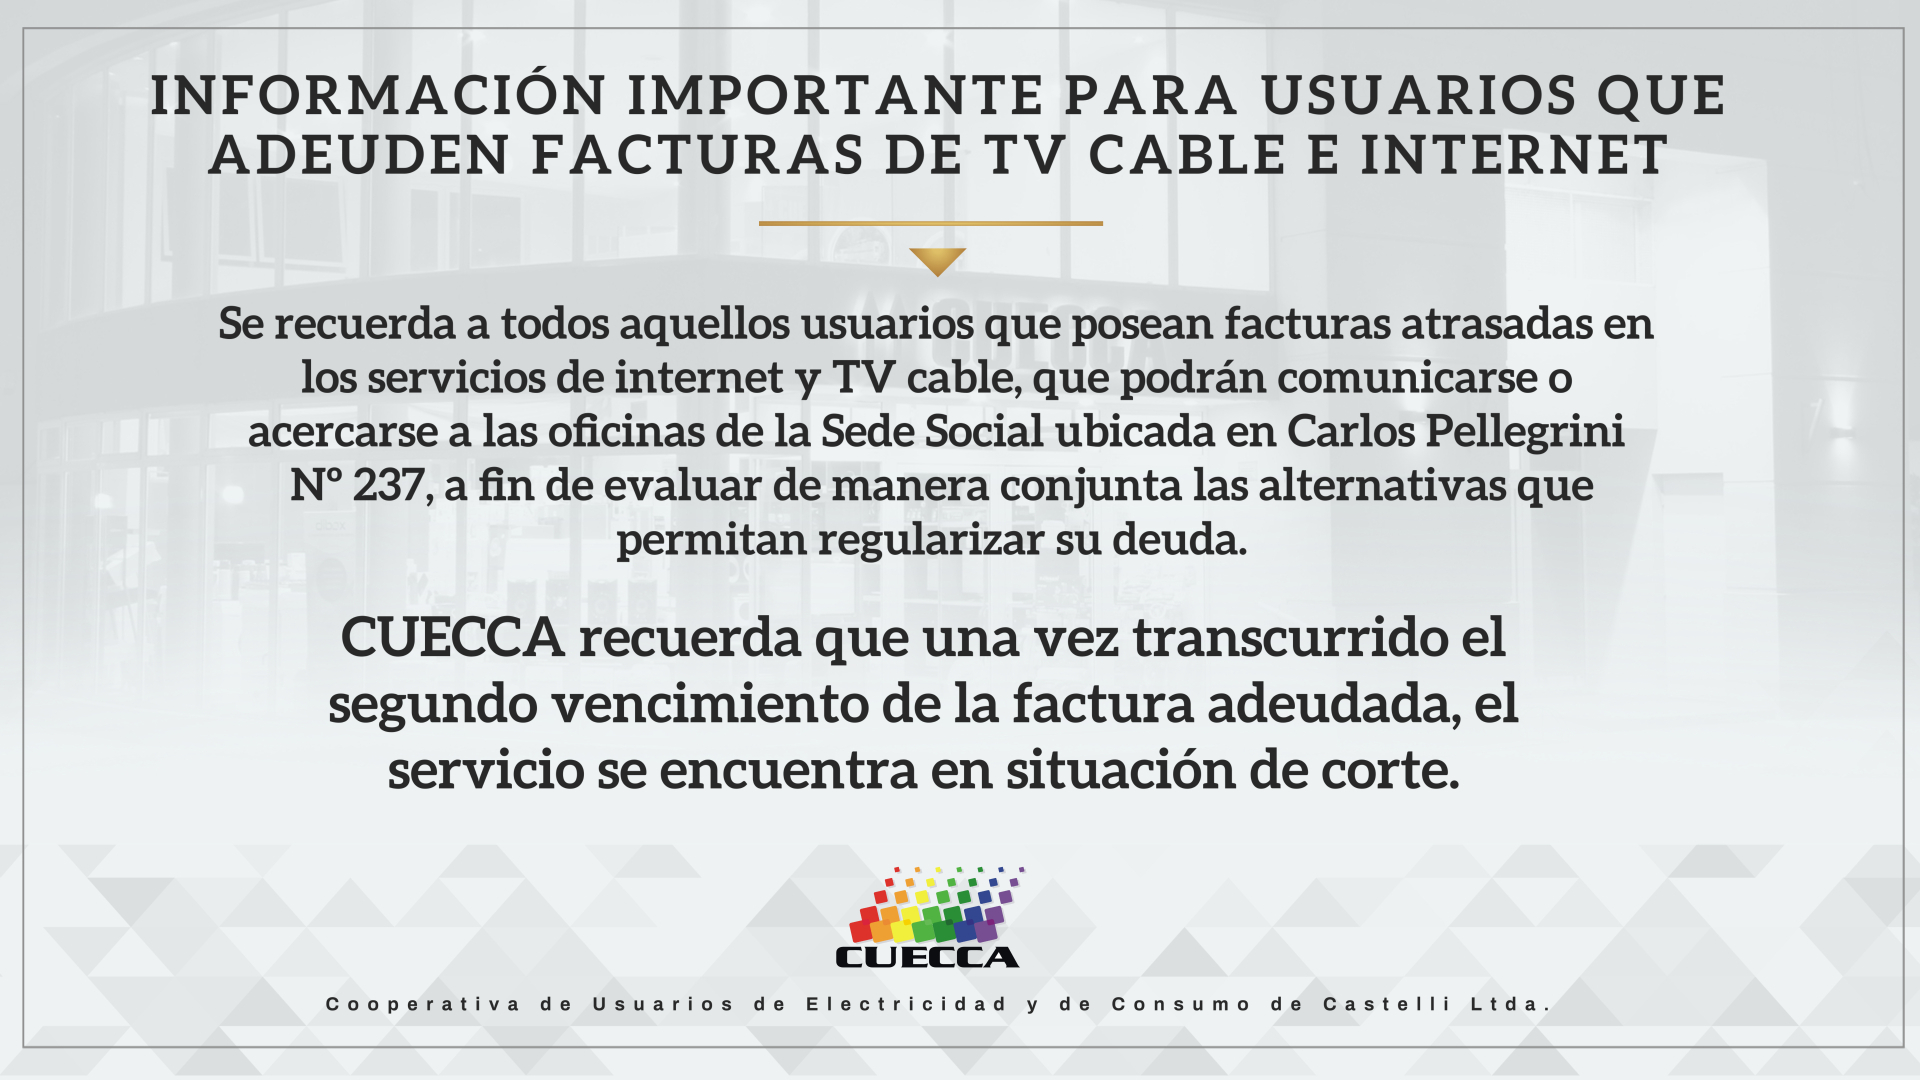 INFORMACION PARA USUARIOS DE TV CABLE E INTERNET QUE POSEAN FACTURAS ATRASADAS